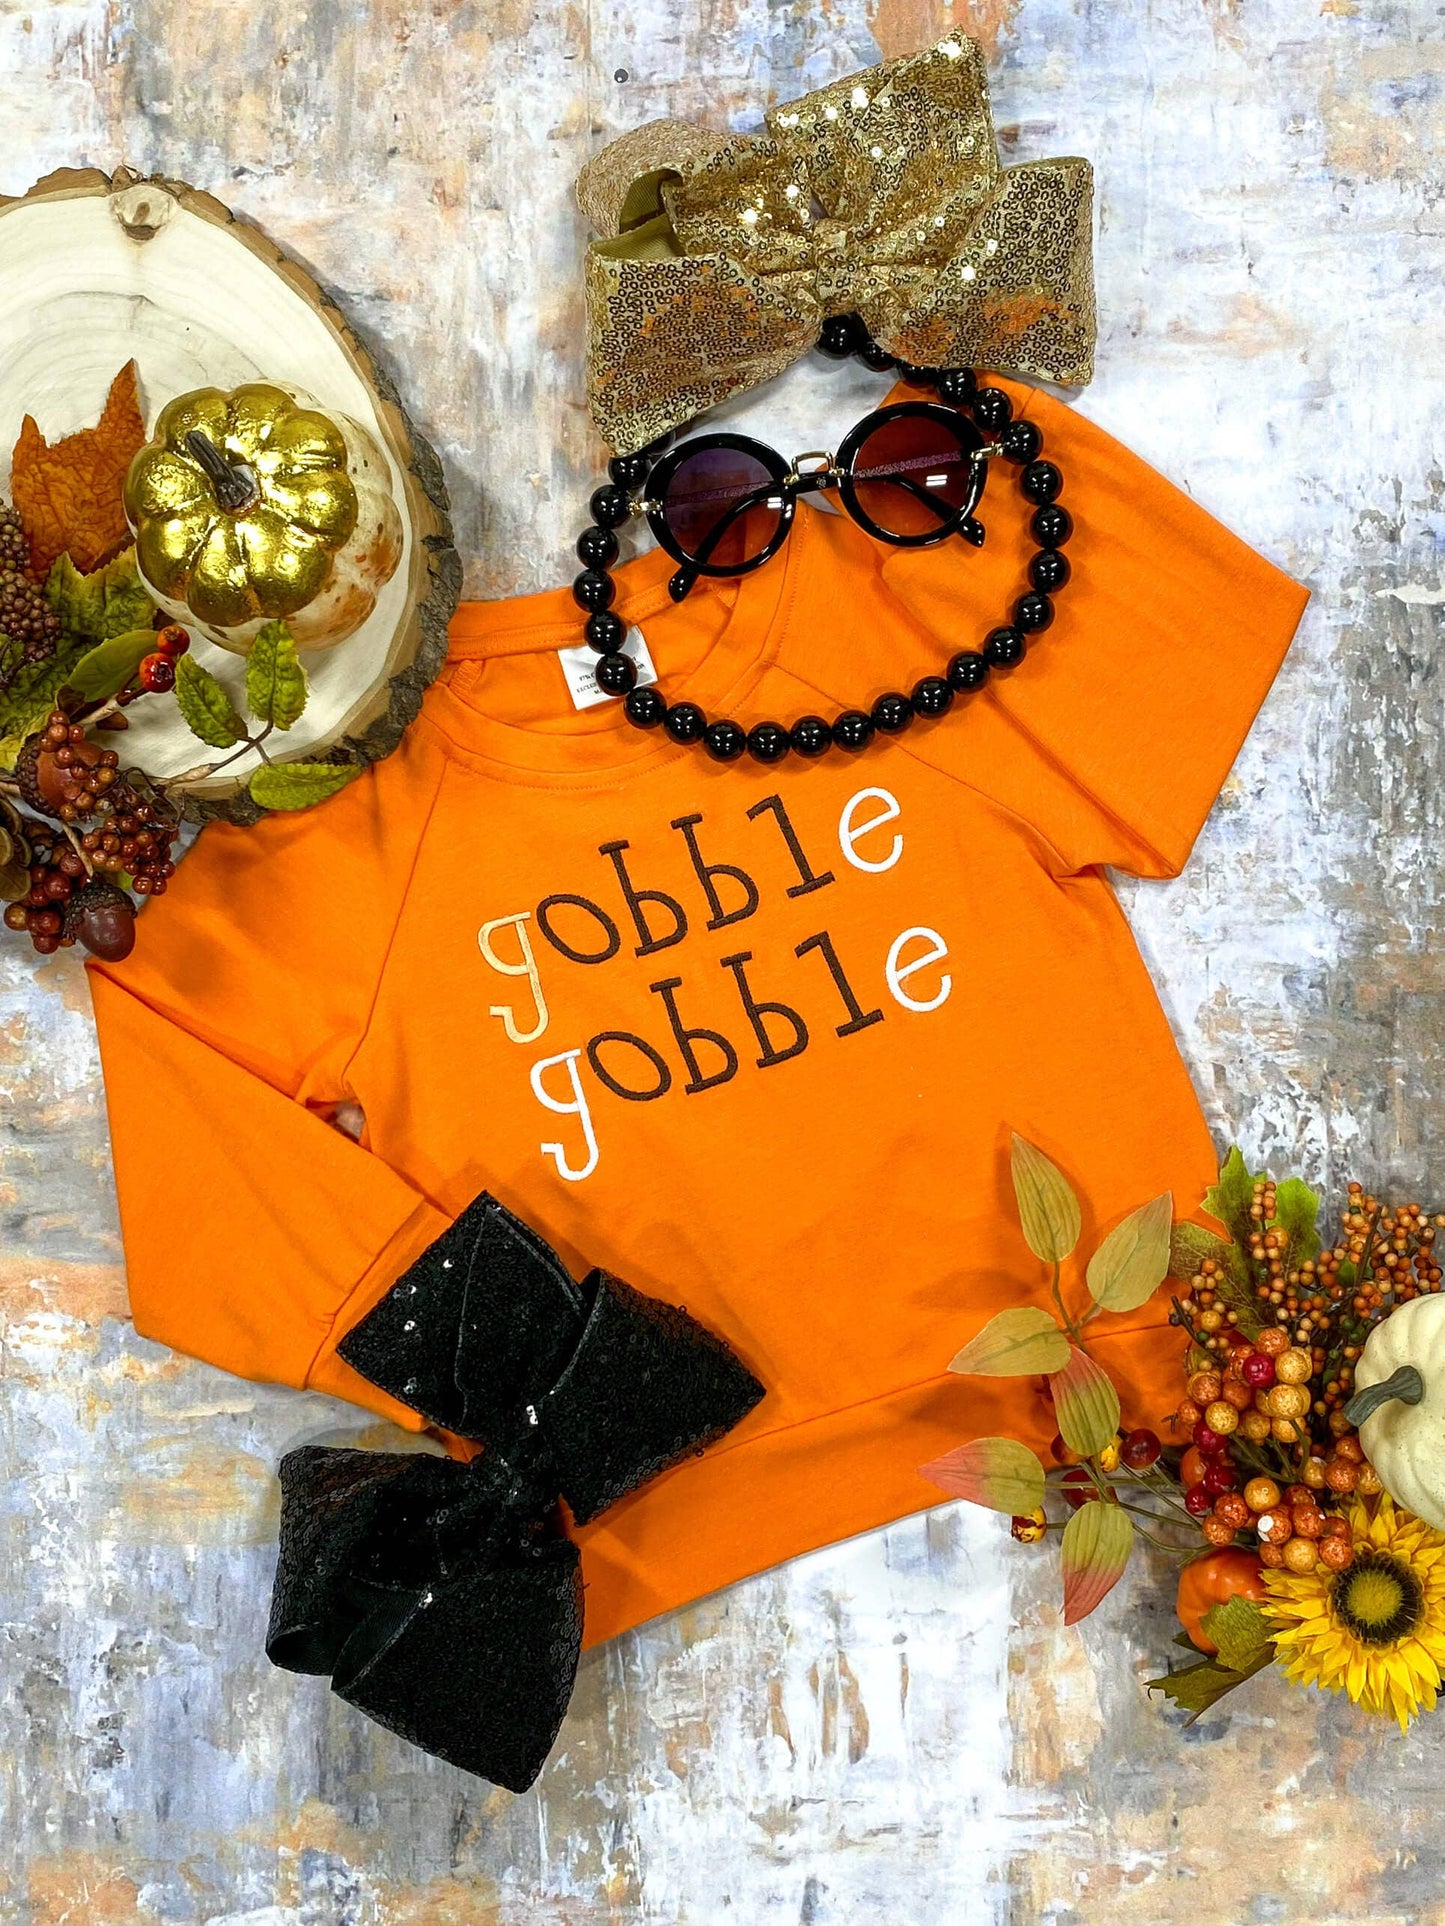 Gobble Gobble Orange Long Sleeved Shirt: 12m